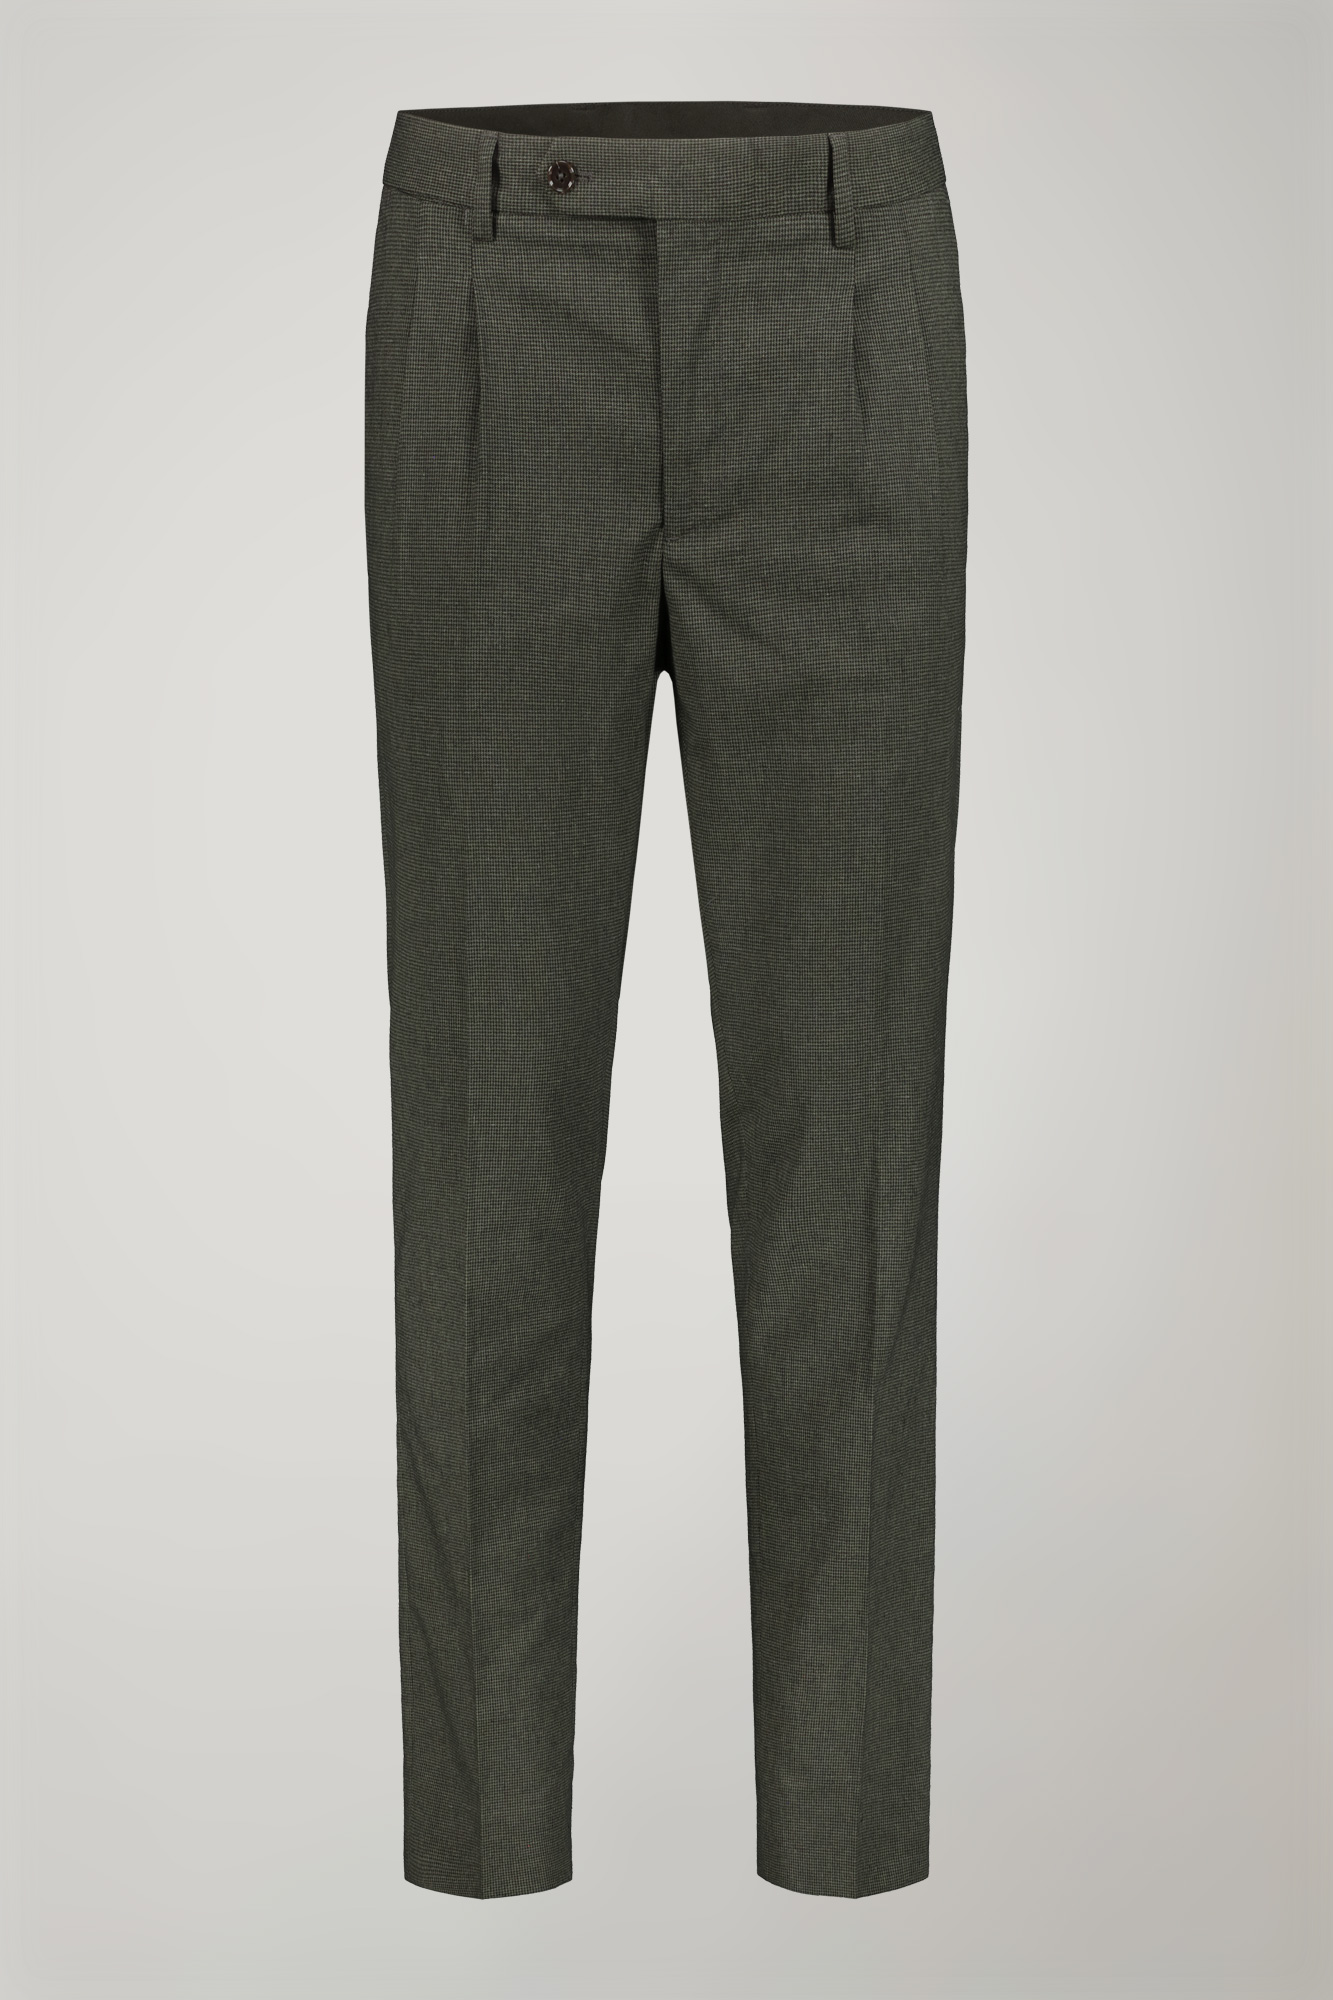 Pantalone classico uomo con doppia pince tessuto con disegno micro pied de poule regular fit image number null